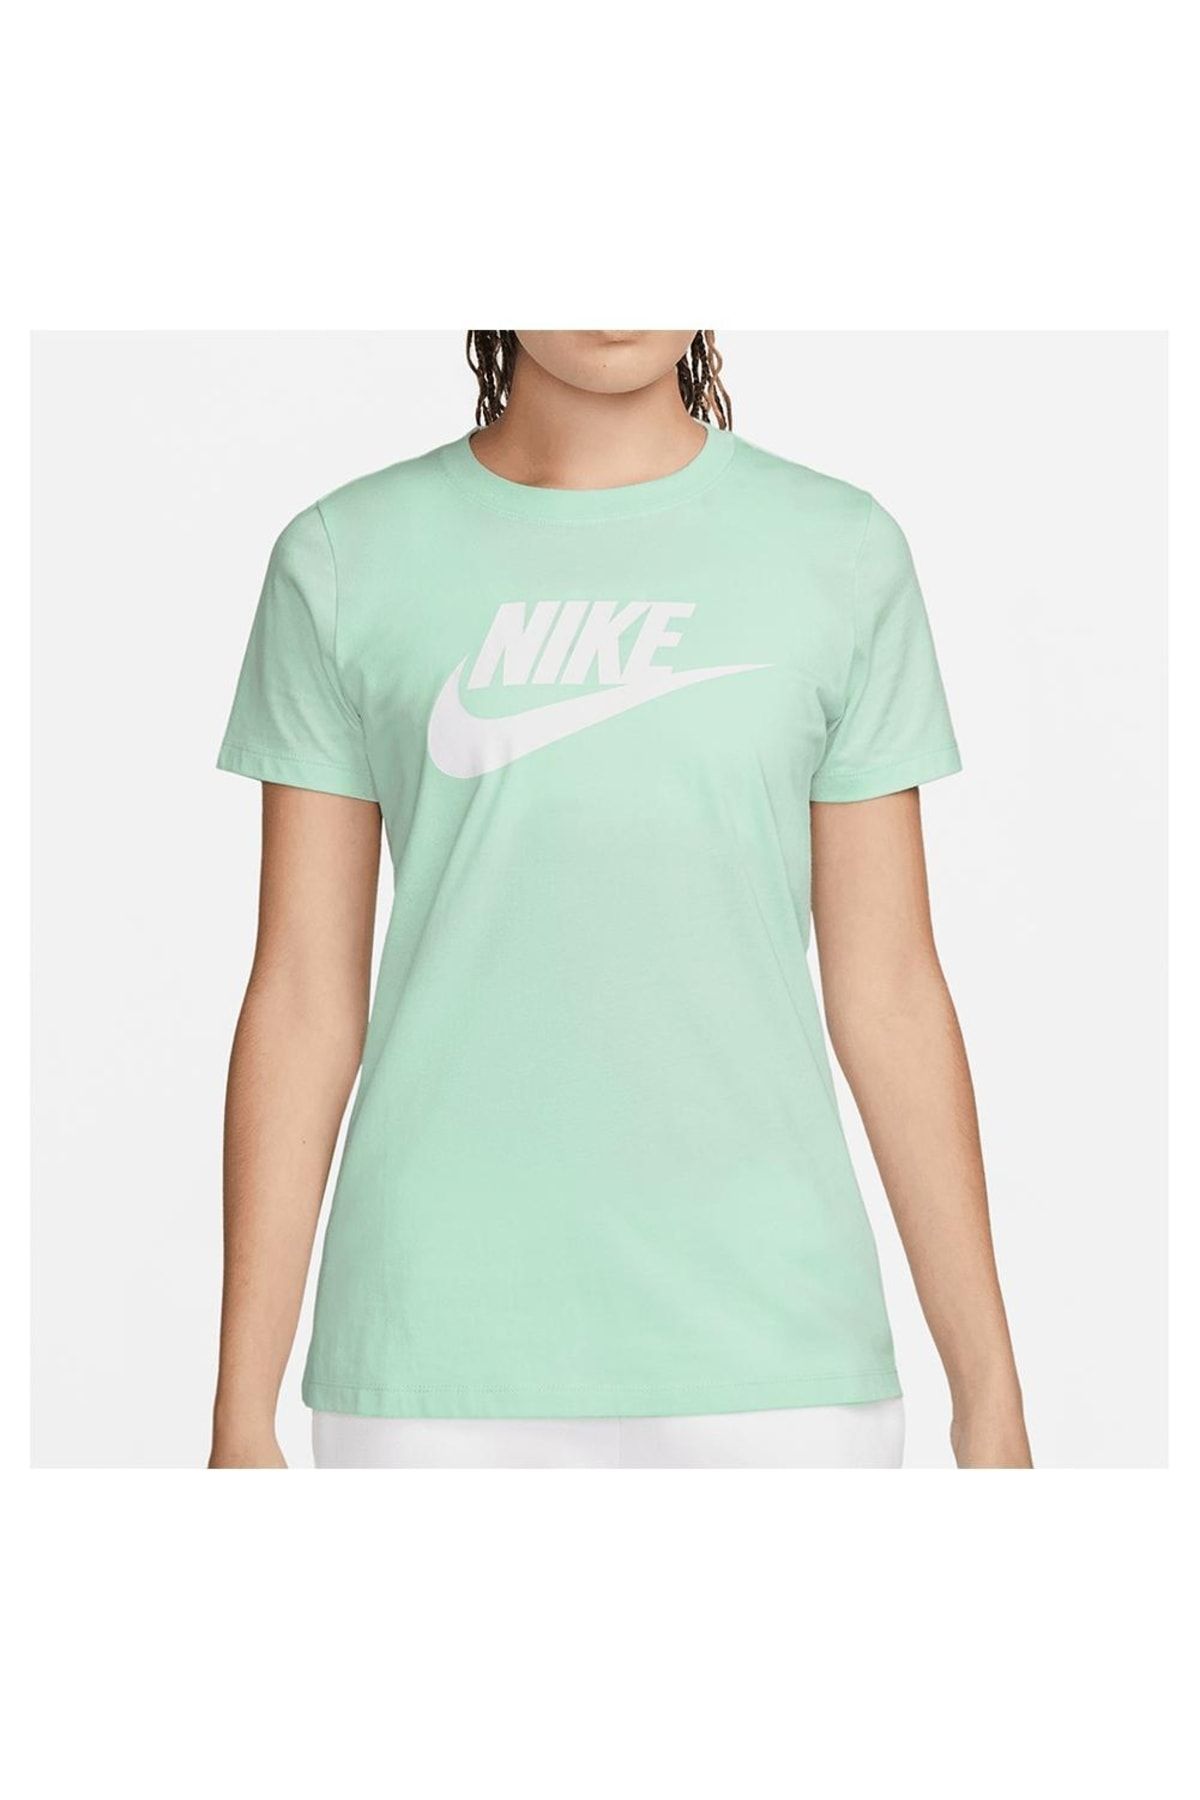 Nike T-shirt Kadın / At5464-394